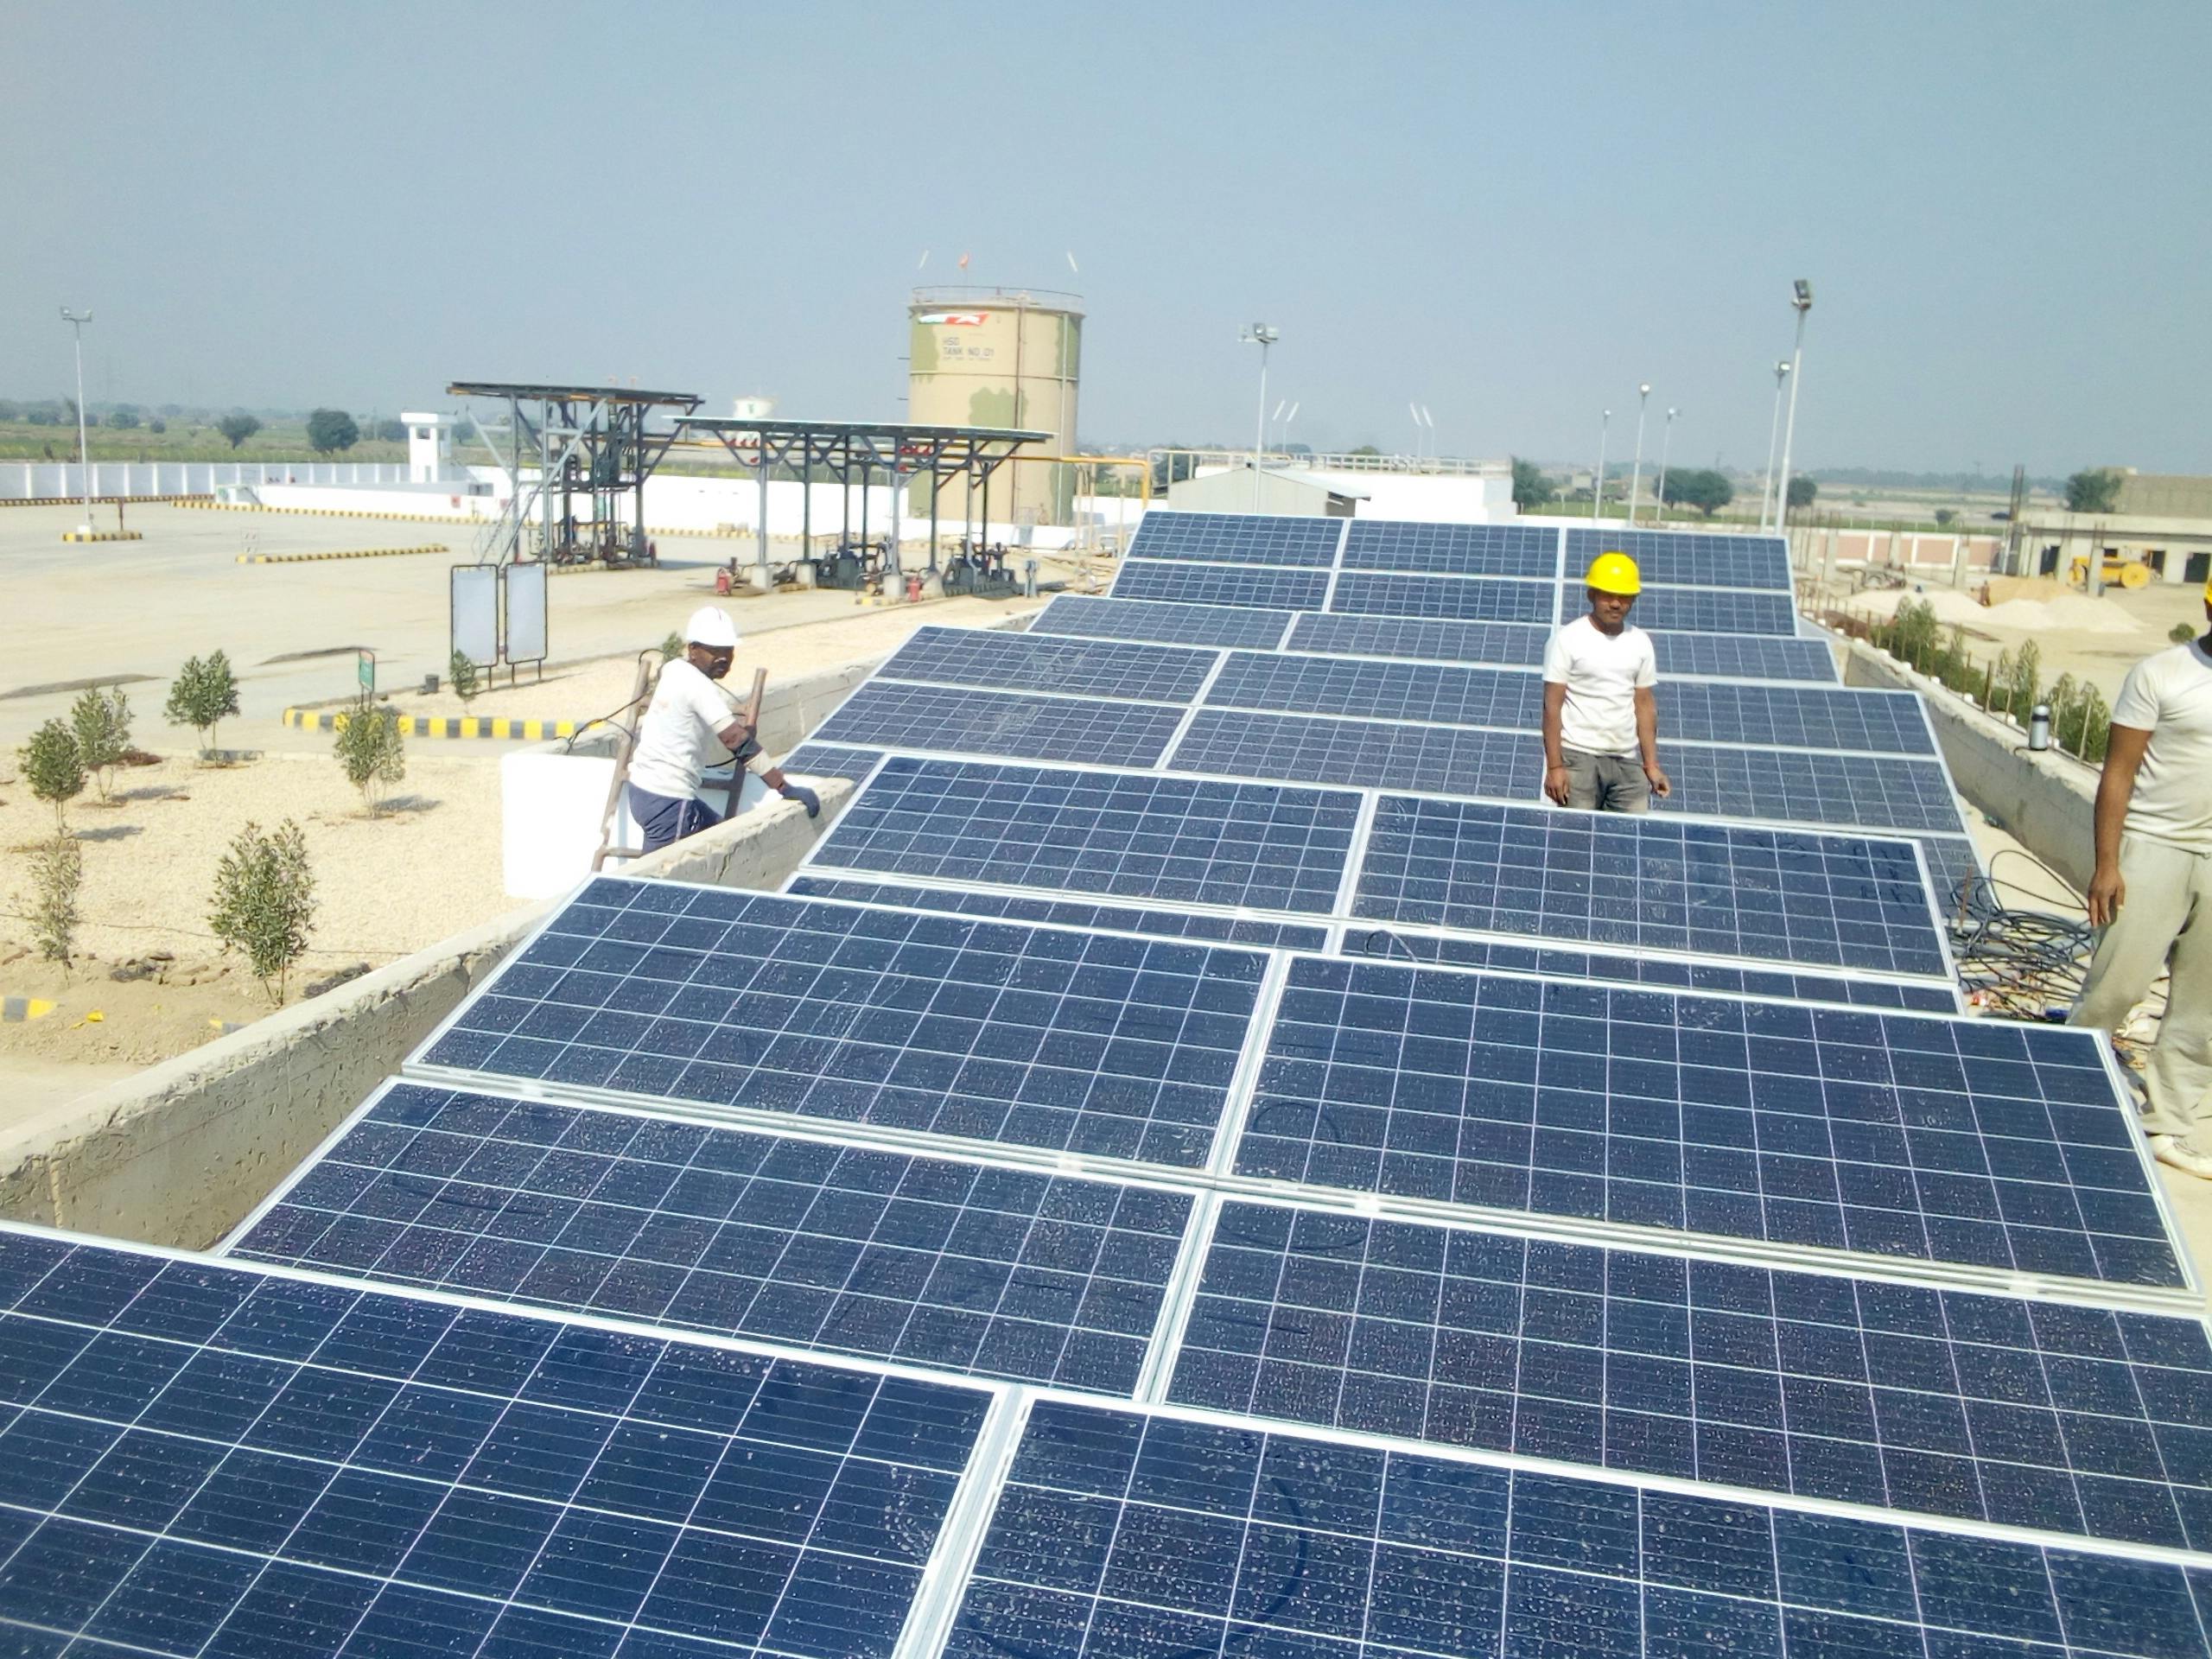 solar technicians installing solar panels